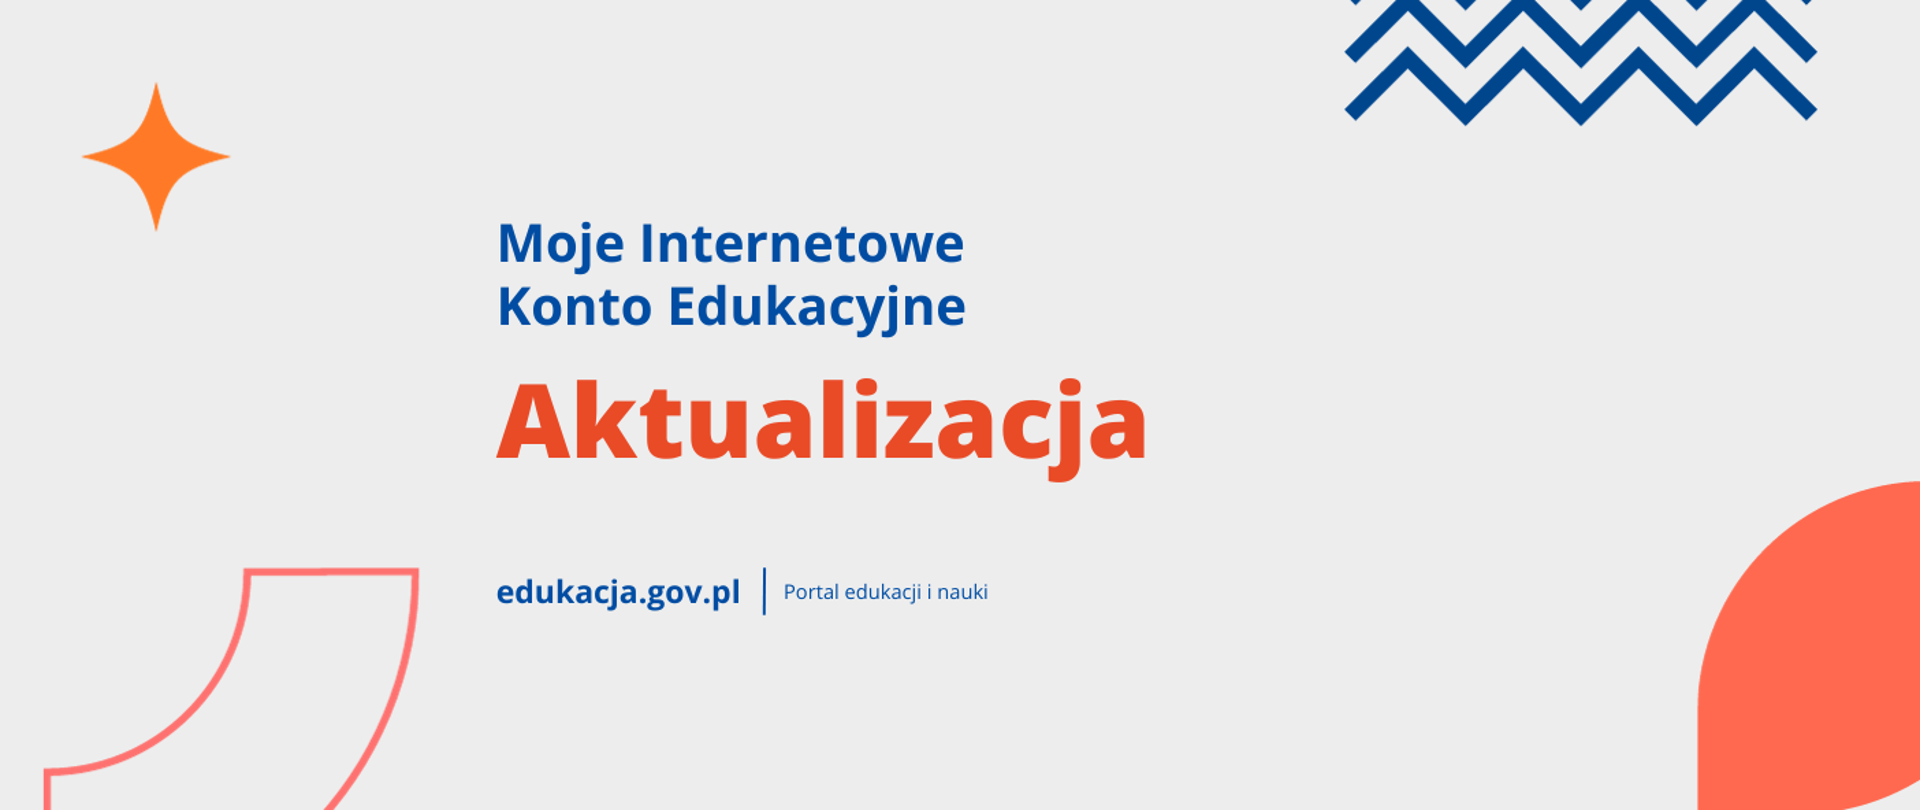 Moje Internetowe Konto Edukacyjne
Aktualizacja
edukacja.gov.pl | Portal edukacji i nauki